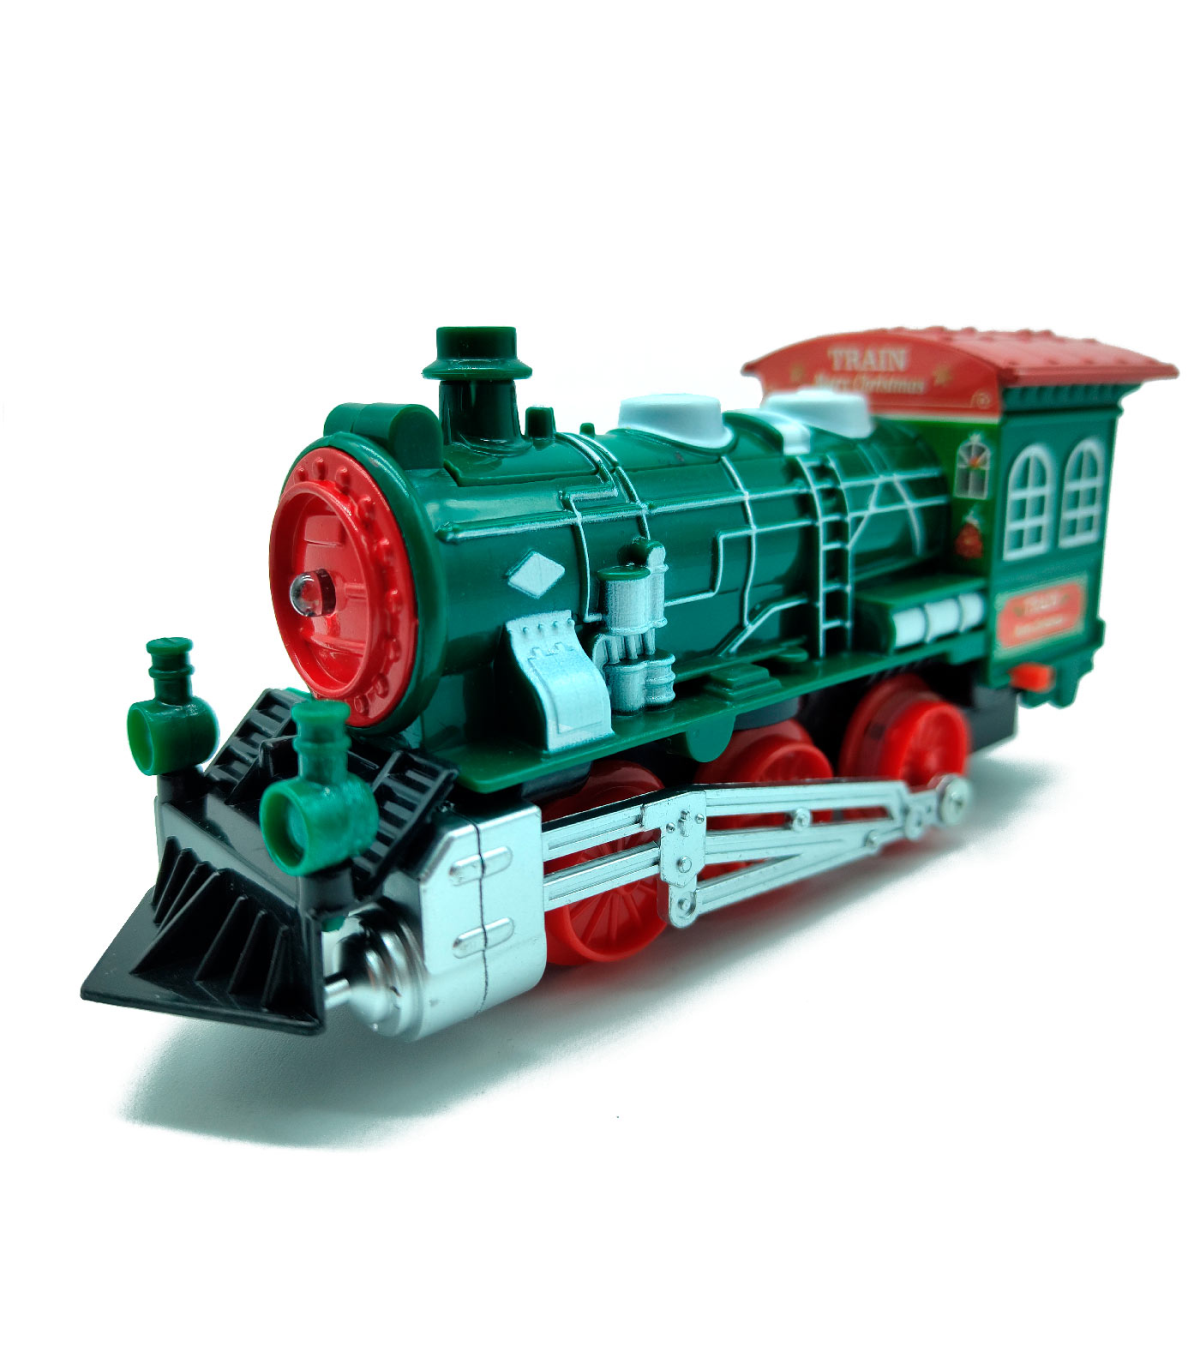 Tradineur - Tren Navideño de juguete 23 piezas con luces y sonido -  Fabricado en plástico - Juguete para Navidad - Raíl hasta 13